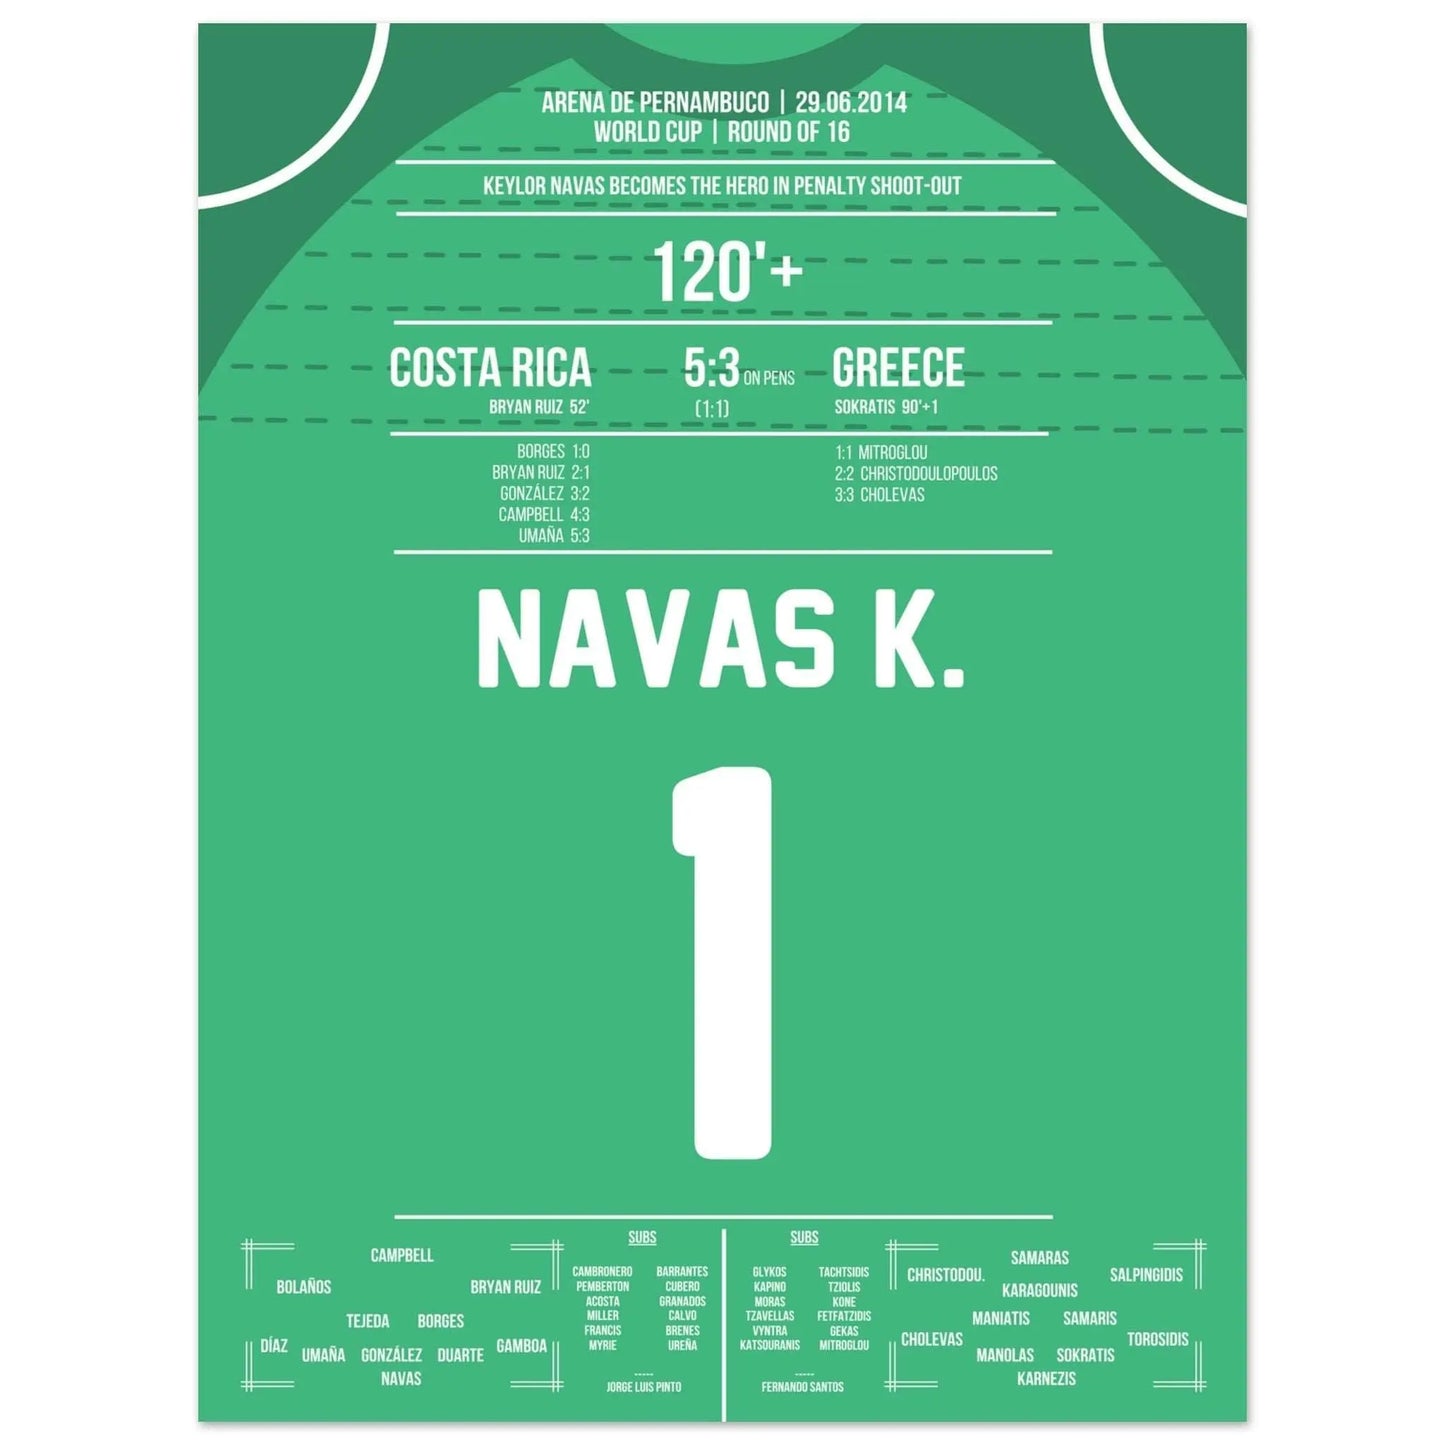 Keylor Navas devient un héros lors des tirs au but | Costa Rica - Grèce Coupe du Monde 2014